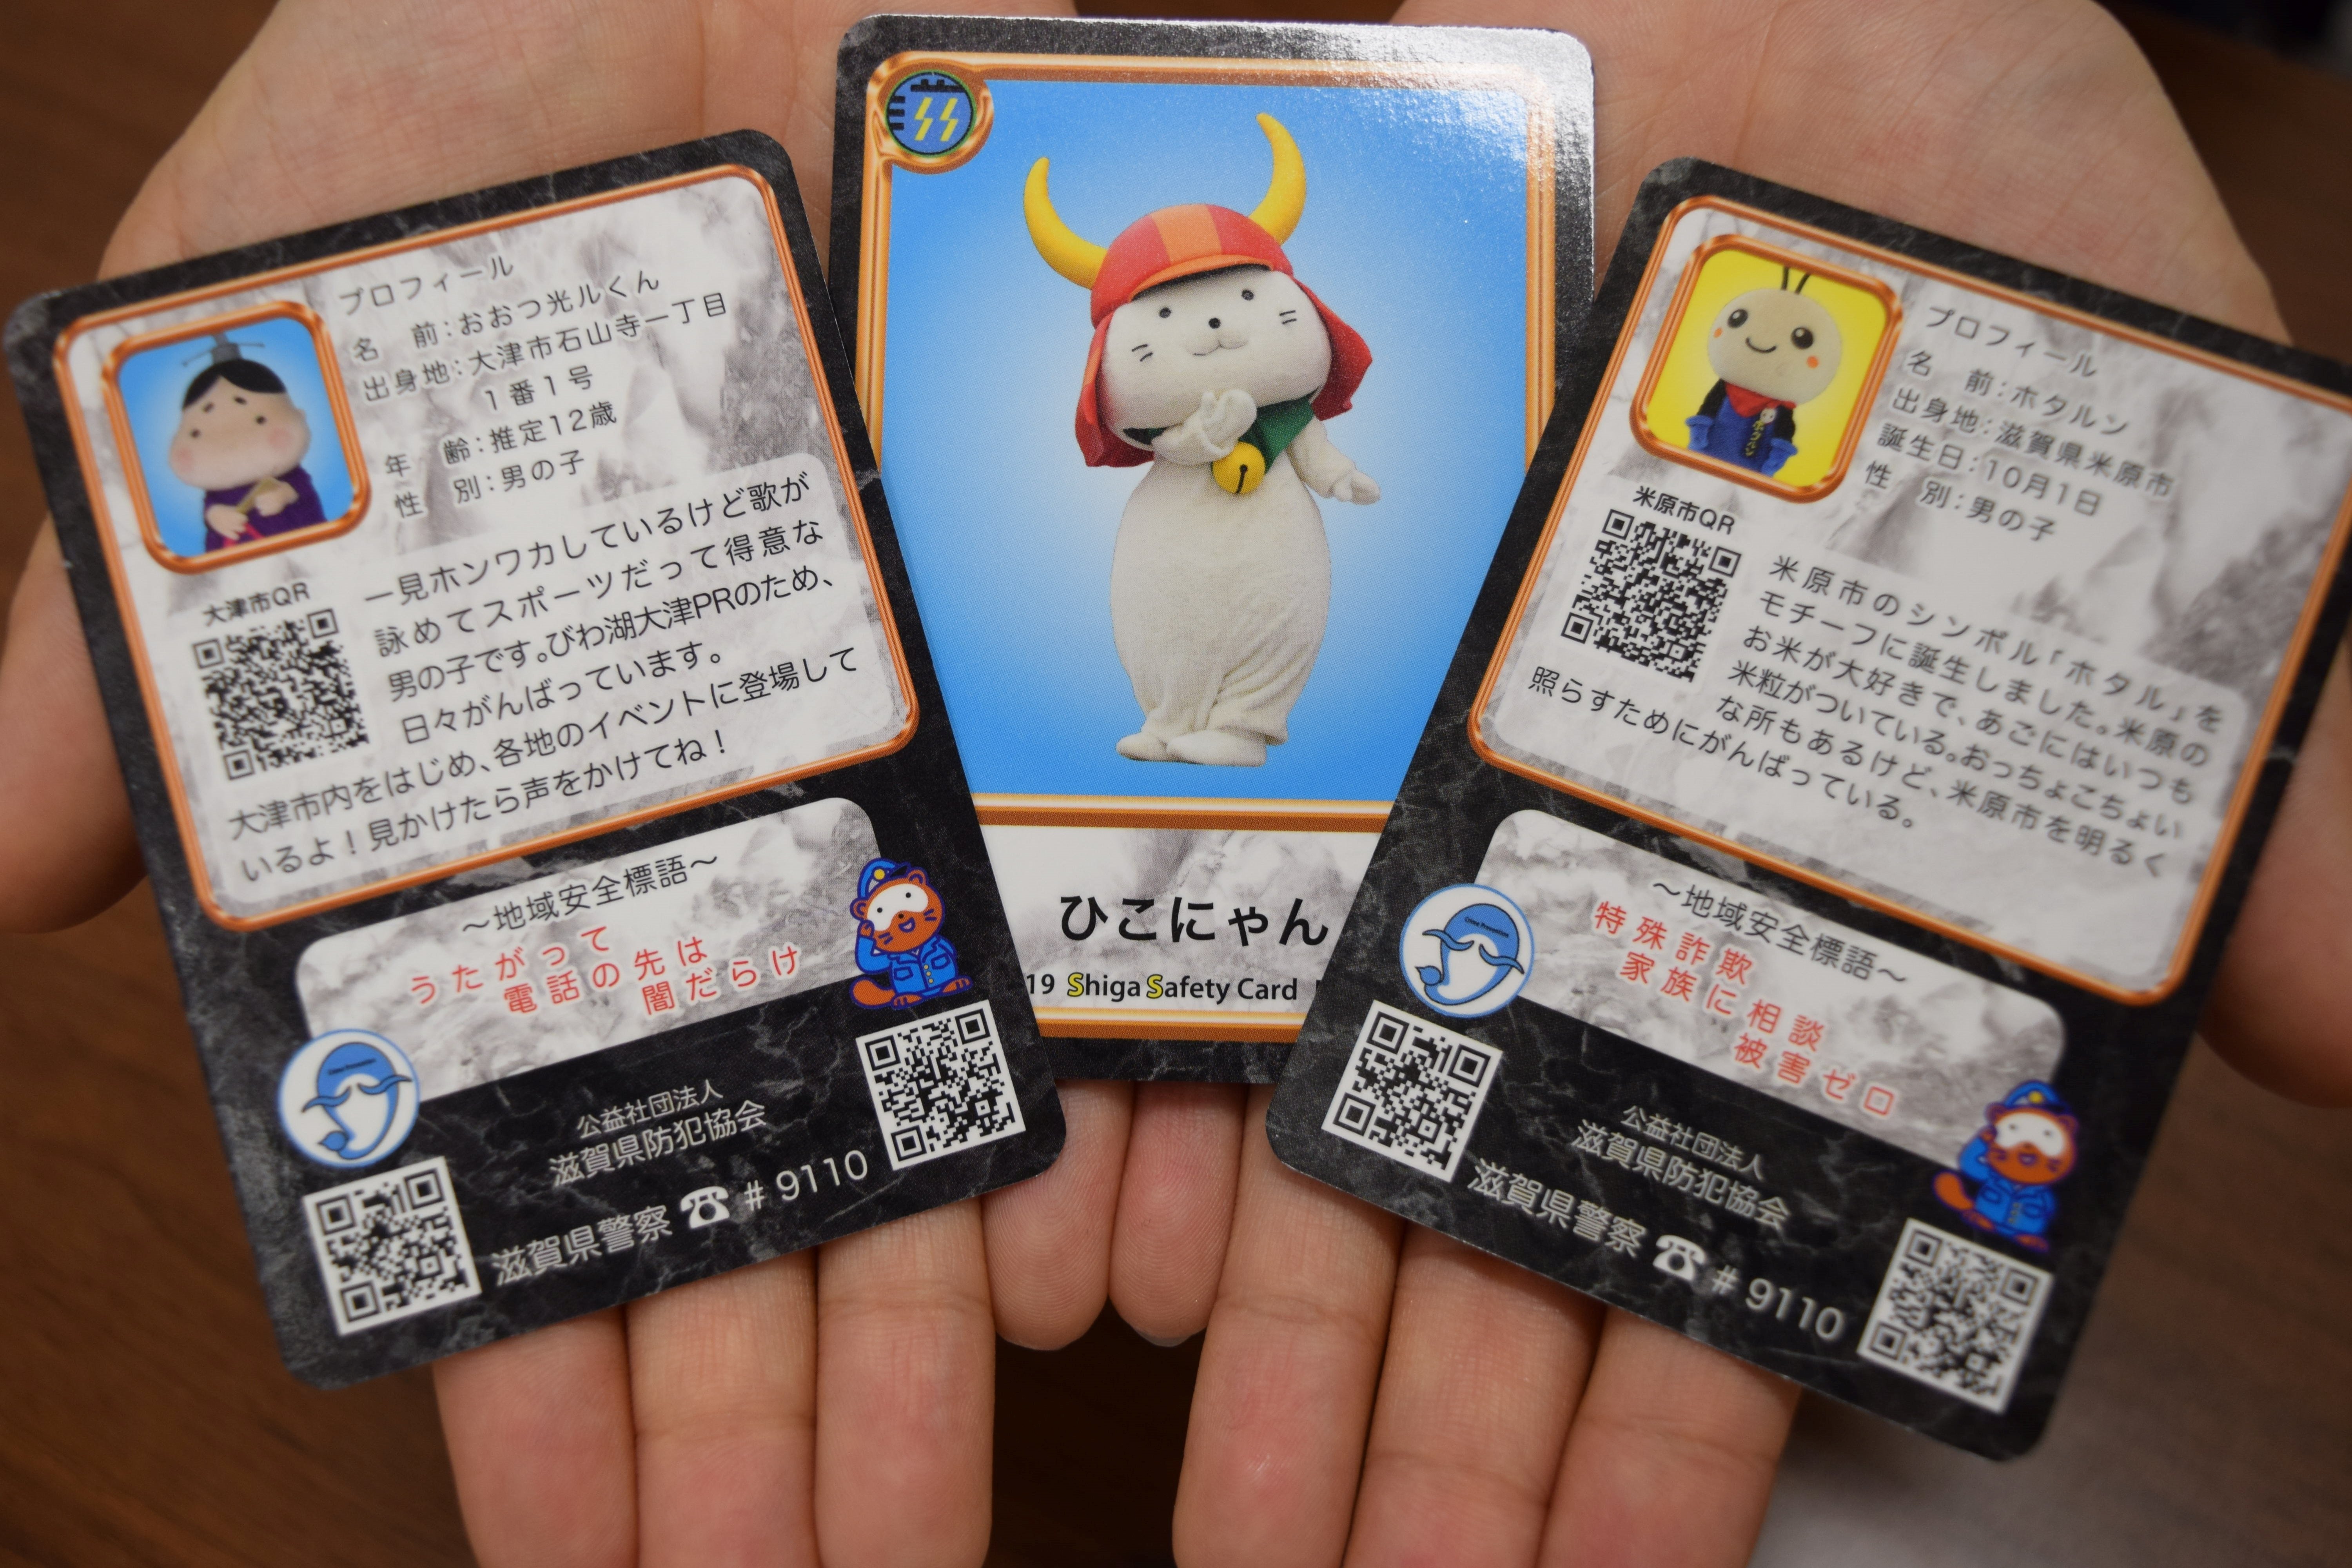 ゆるキャラで防犯ＰＲ、トレーディングカード作成　滋賀県警